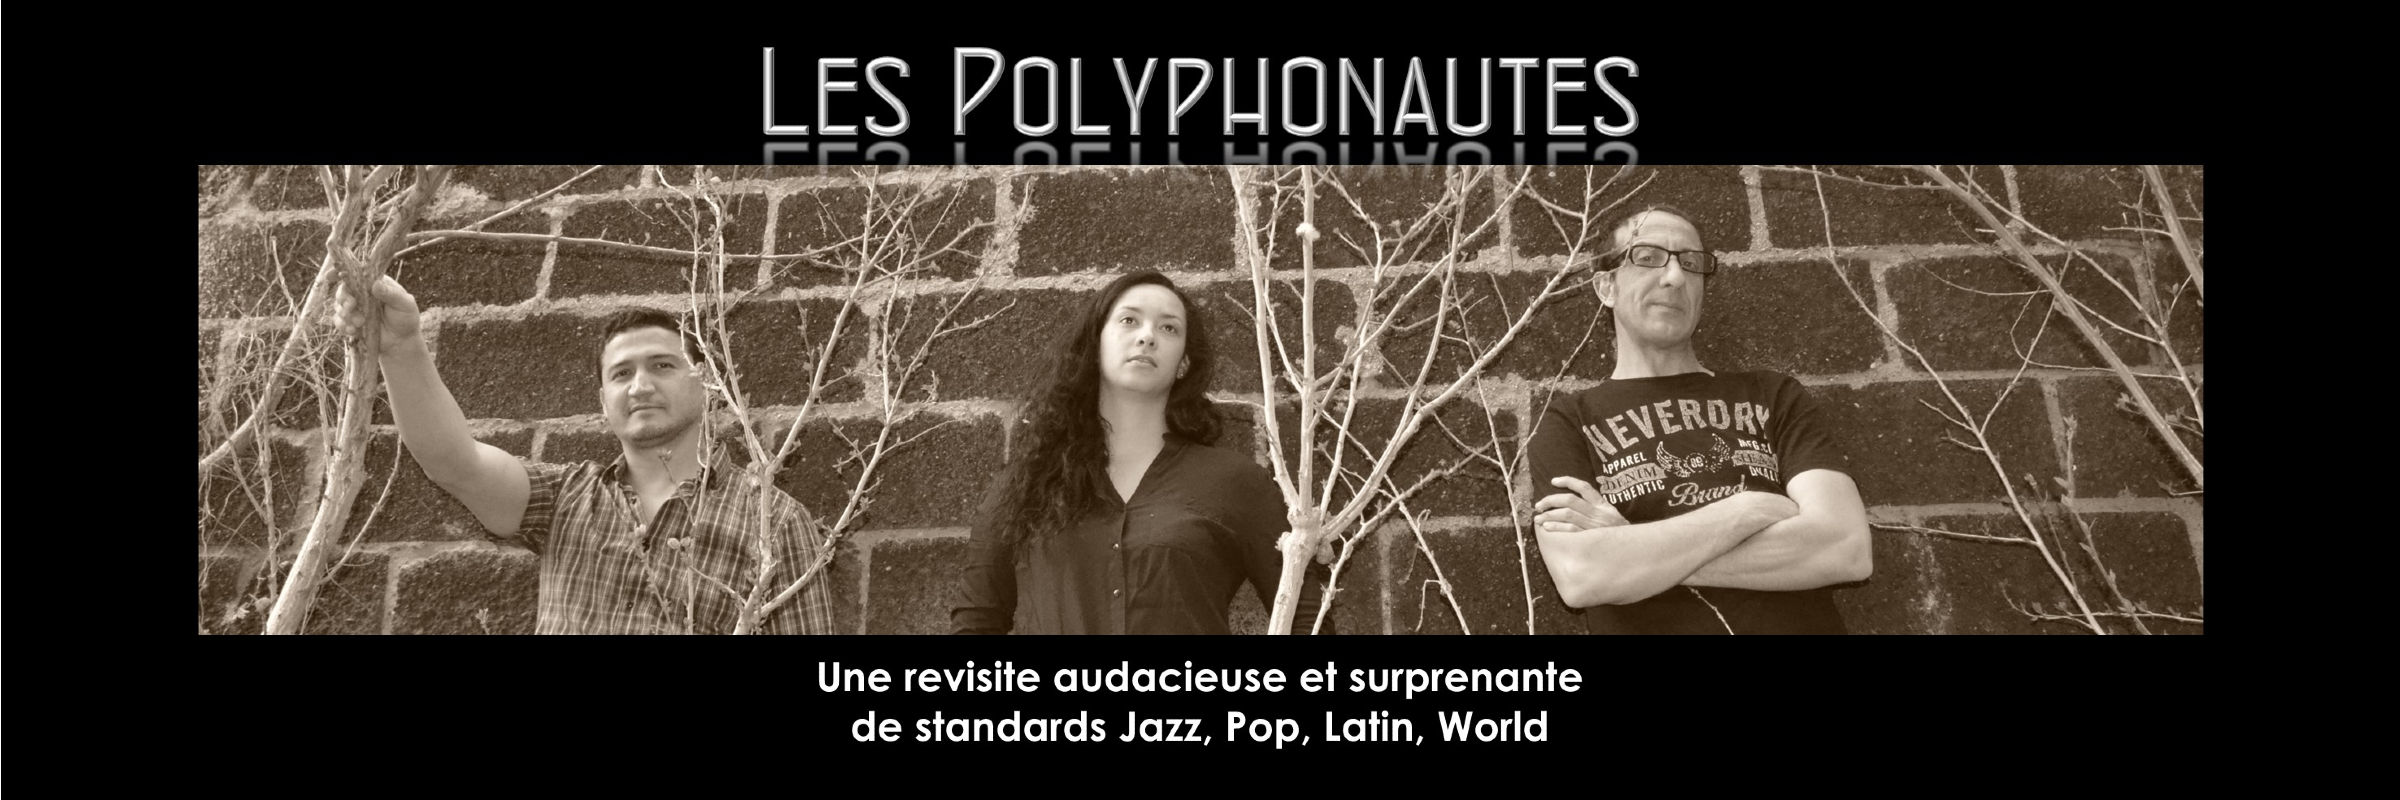 Les Polyphonautes, musicien Soul en représentation à Seine Saint Denis - photo de couverture